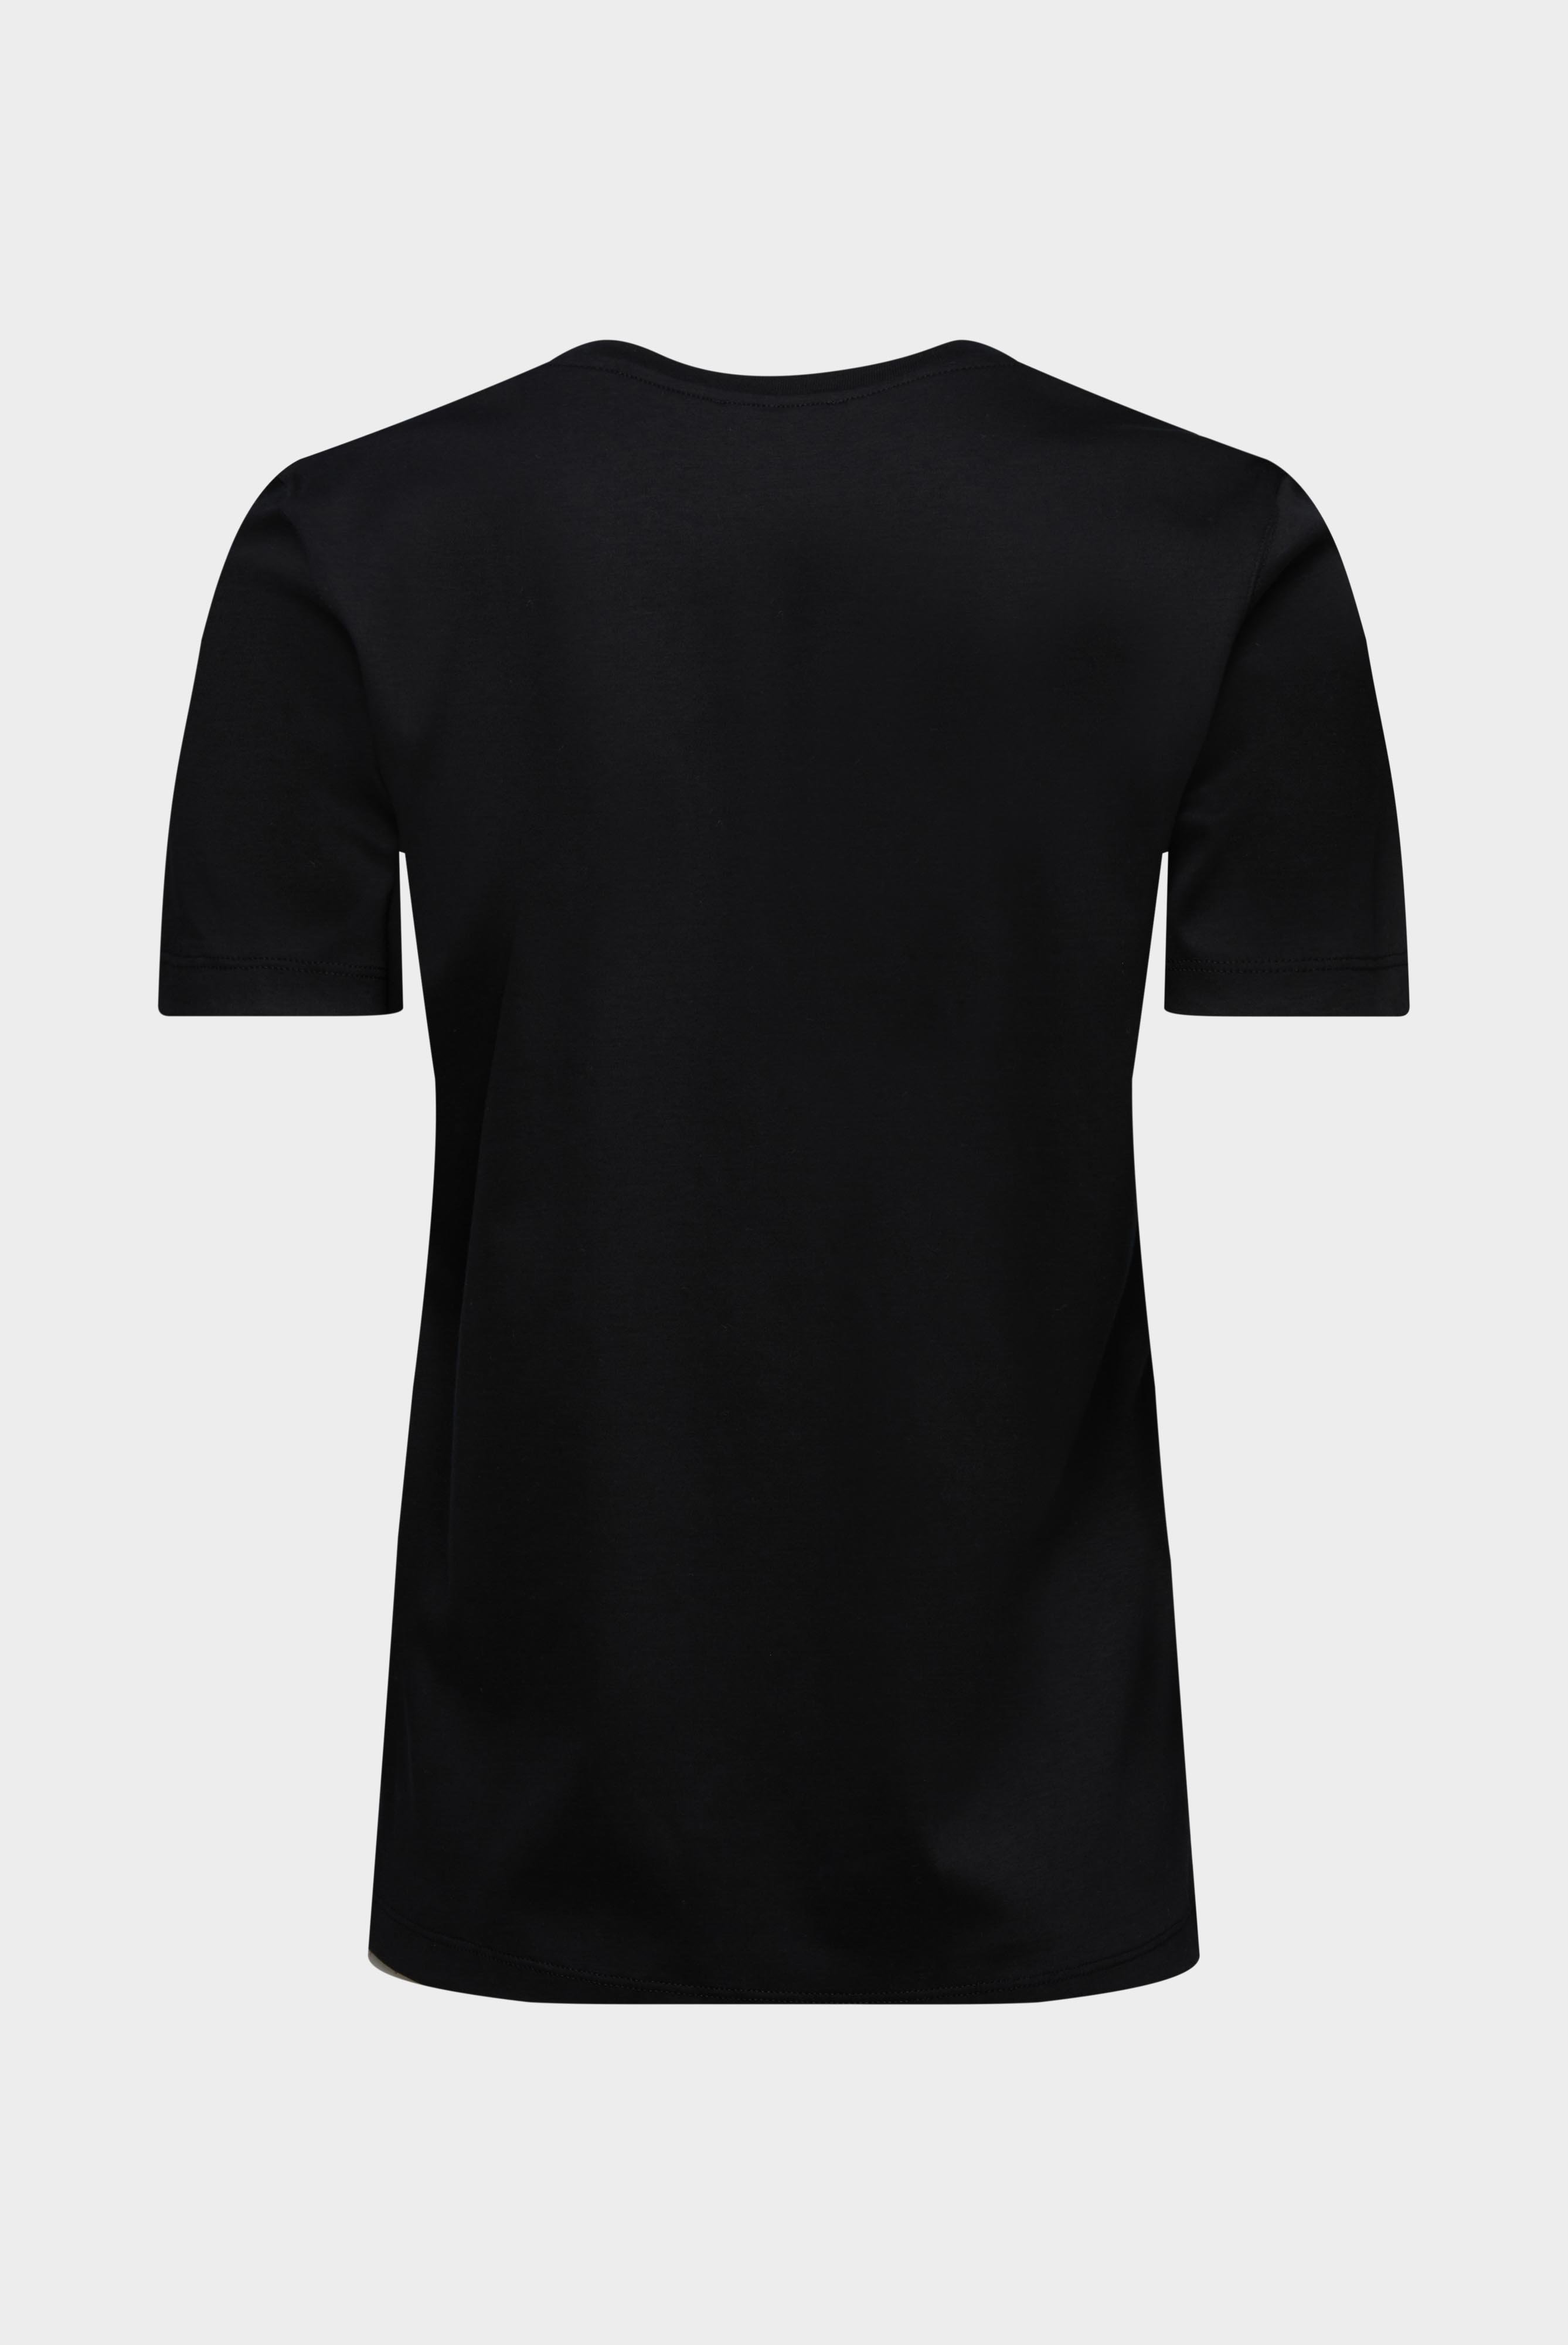 Tops & T-Shirts+Jersey T-Shirt+05.6384.18.180031.099.34